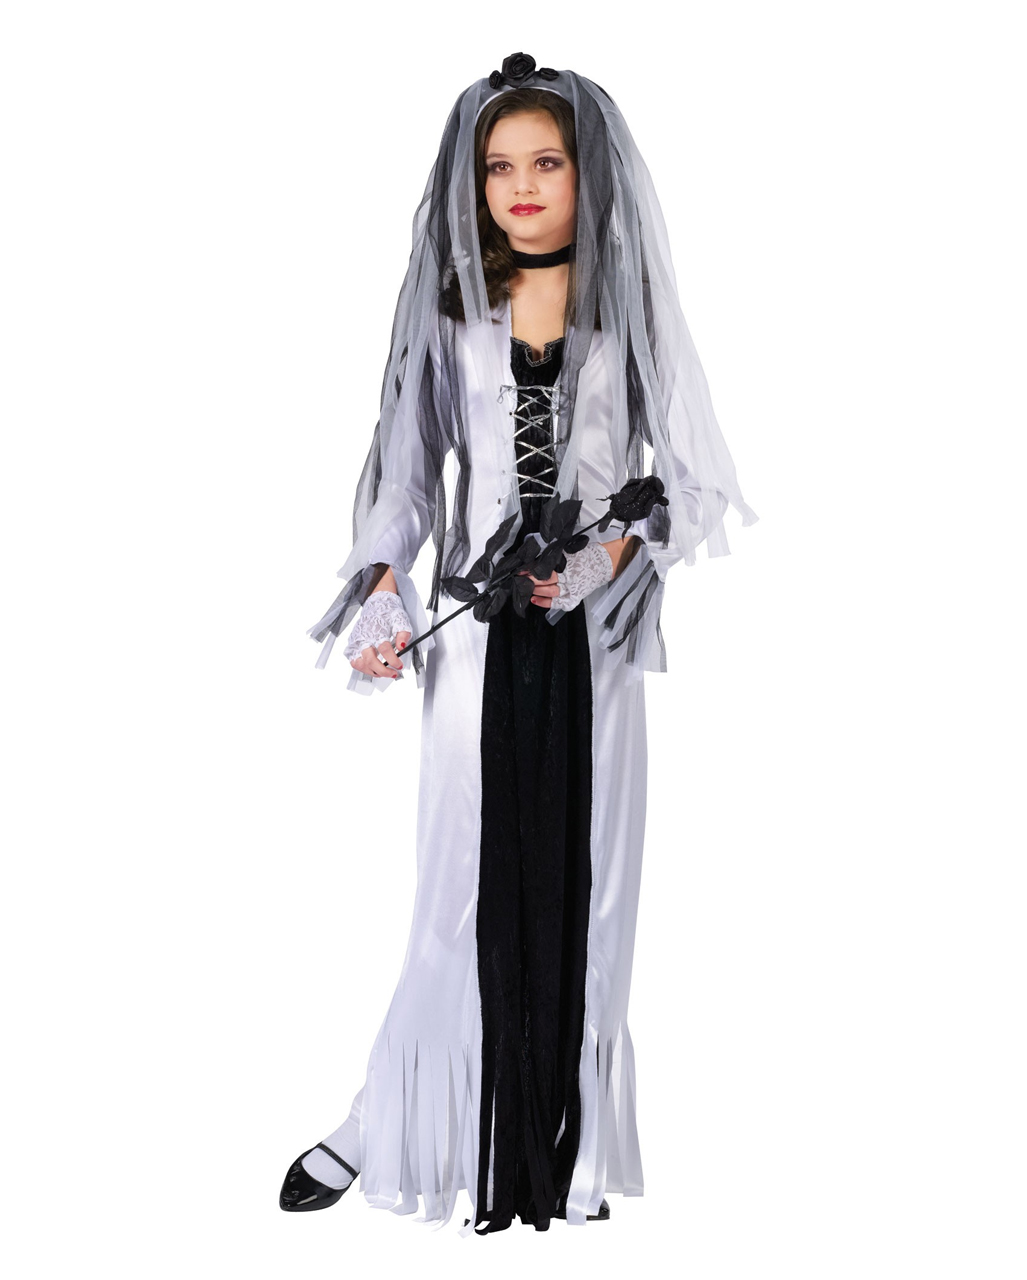 GEISTERBRAUT Kinder Kostüm Gr 158 Kleid mit Brautschleier Halloween Mädchen #468 